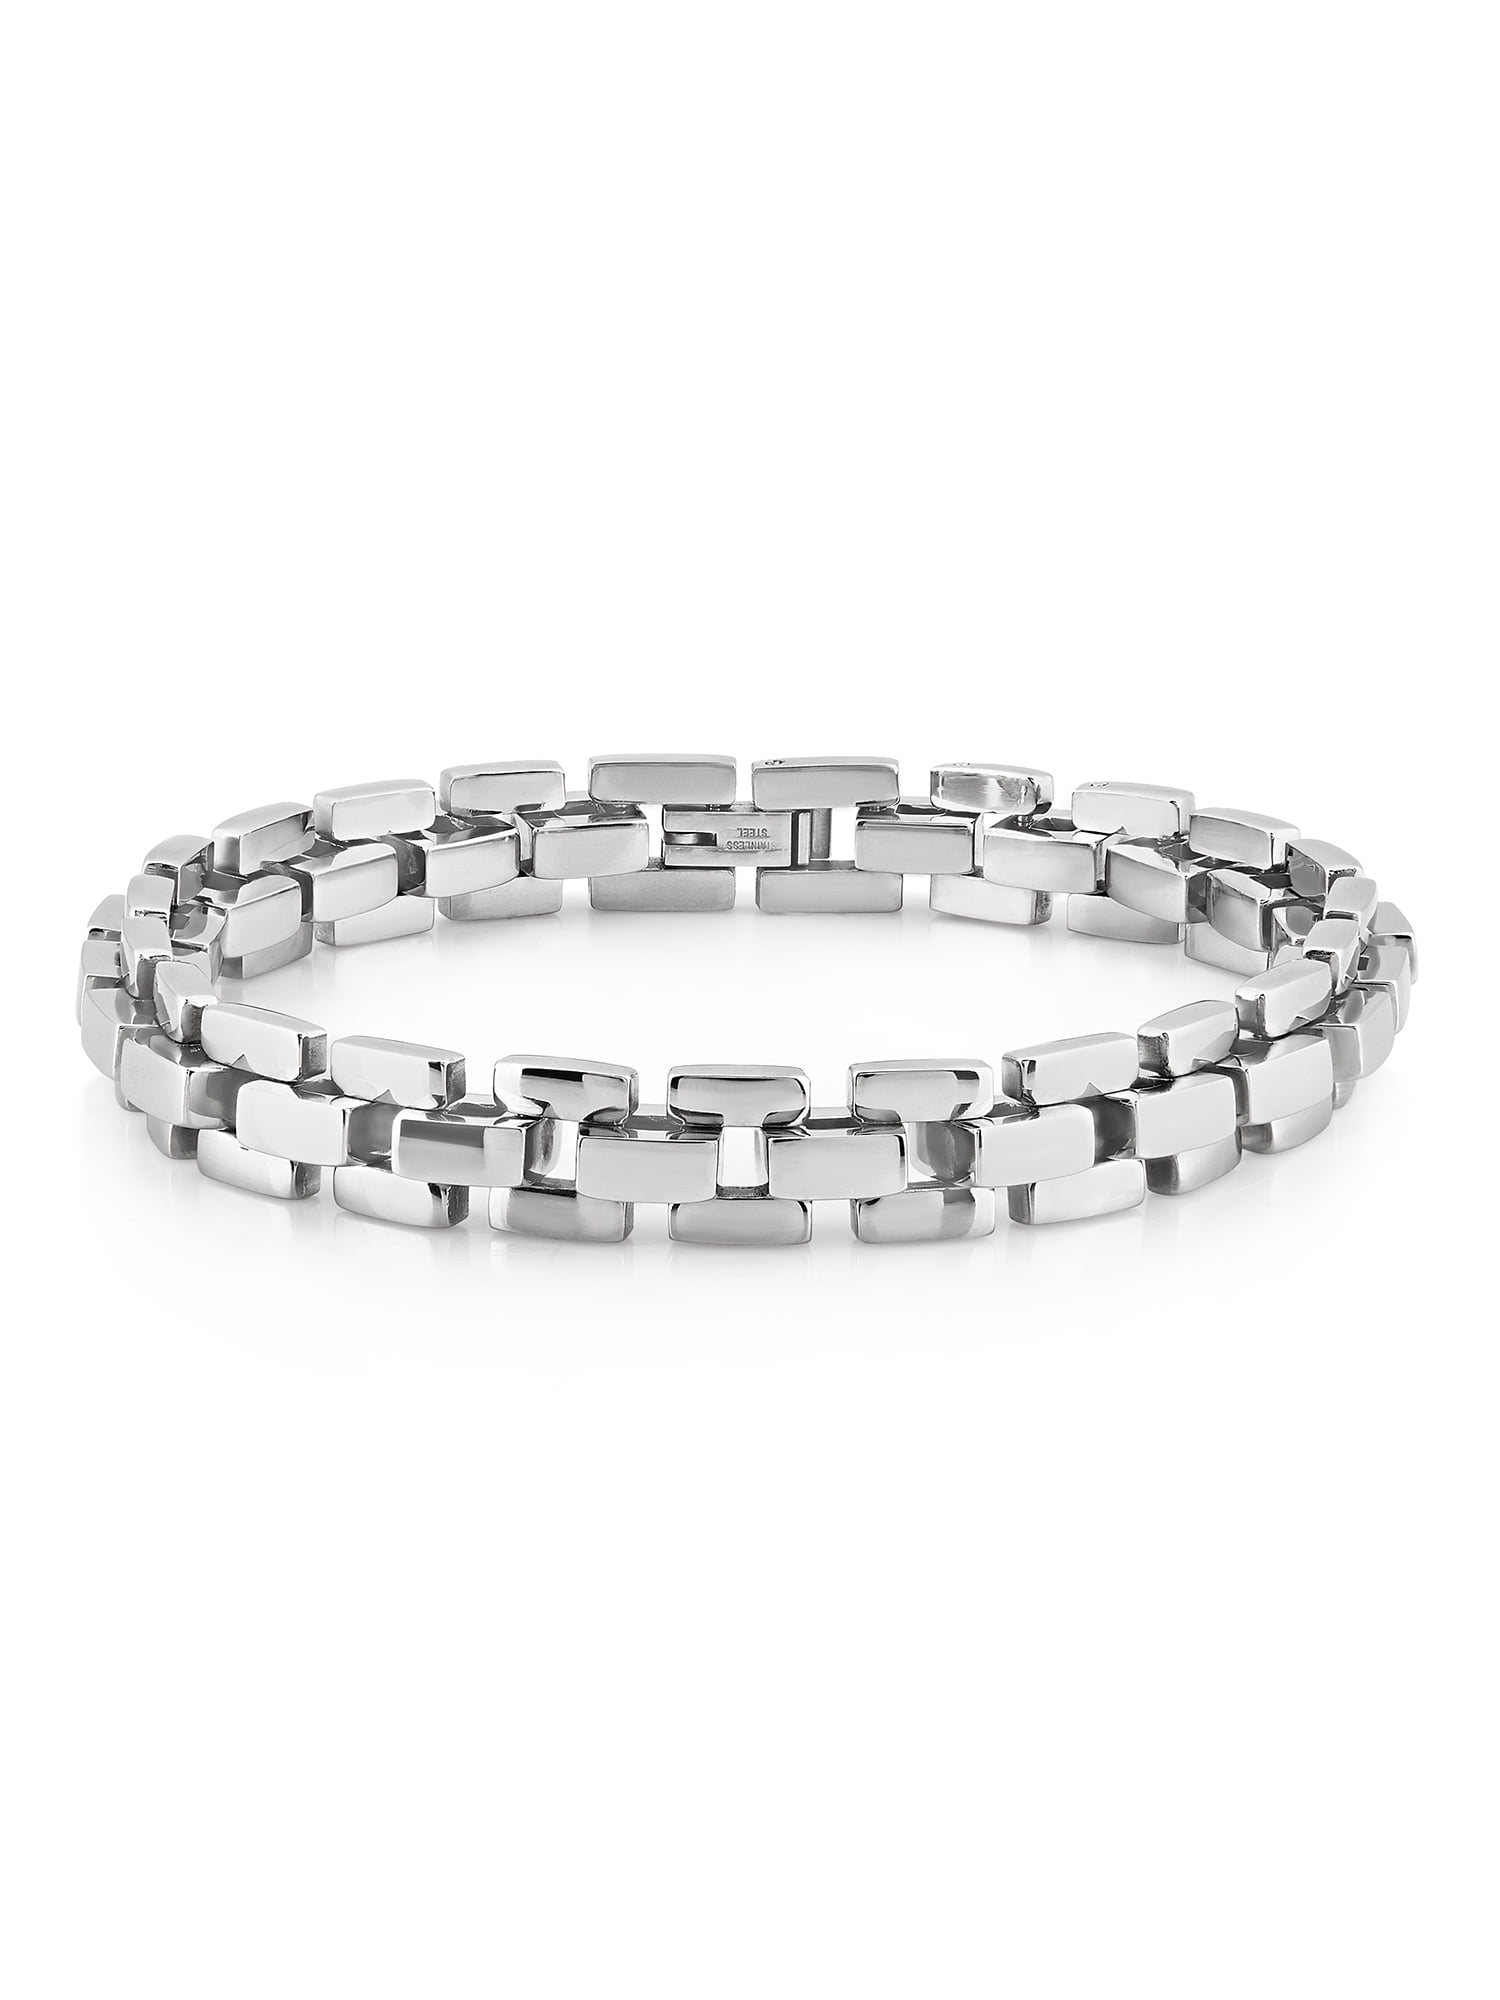 Coastal Jewelry Stainless Steel Box Chain Bracelet (10mm) - 8.5 ...